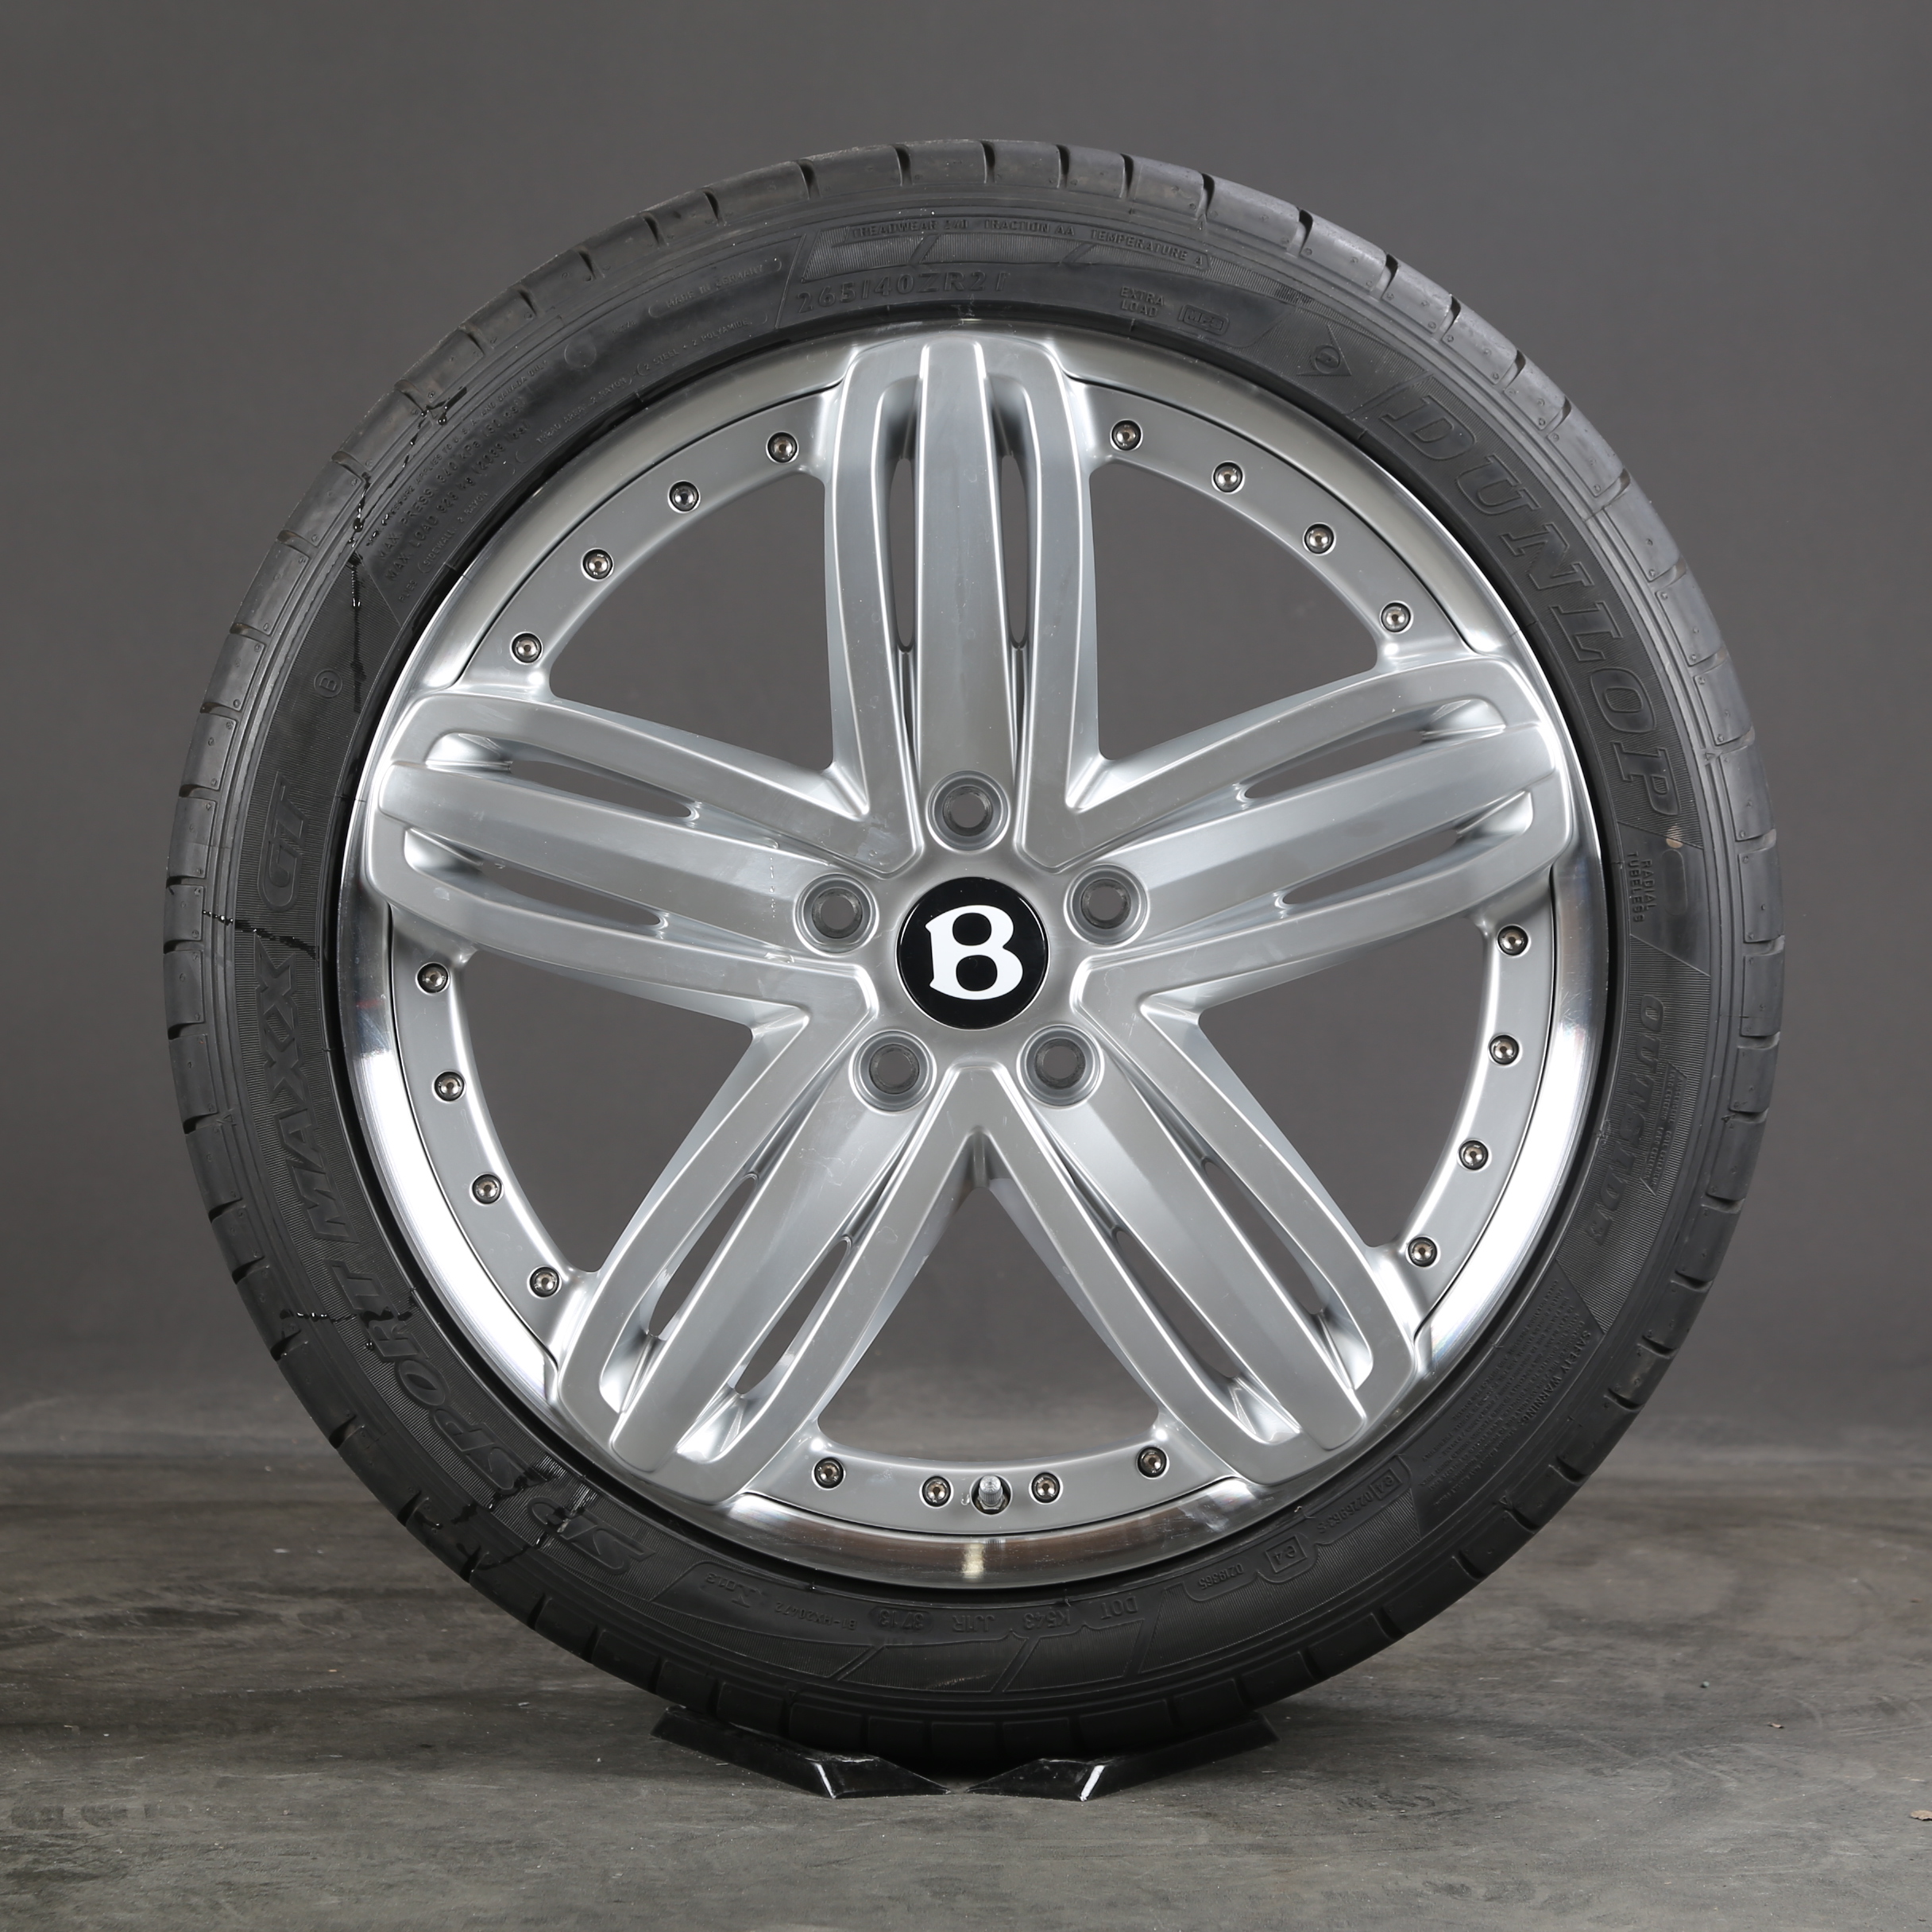 Llantas de verano de 21 pulgadas originales Bentley Mulsanne 3Y0601025N neumáticos de verano